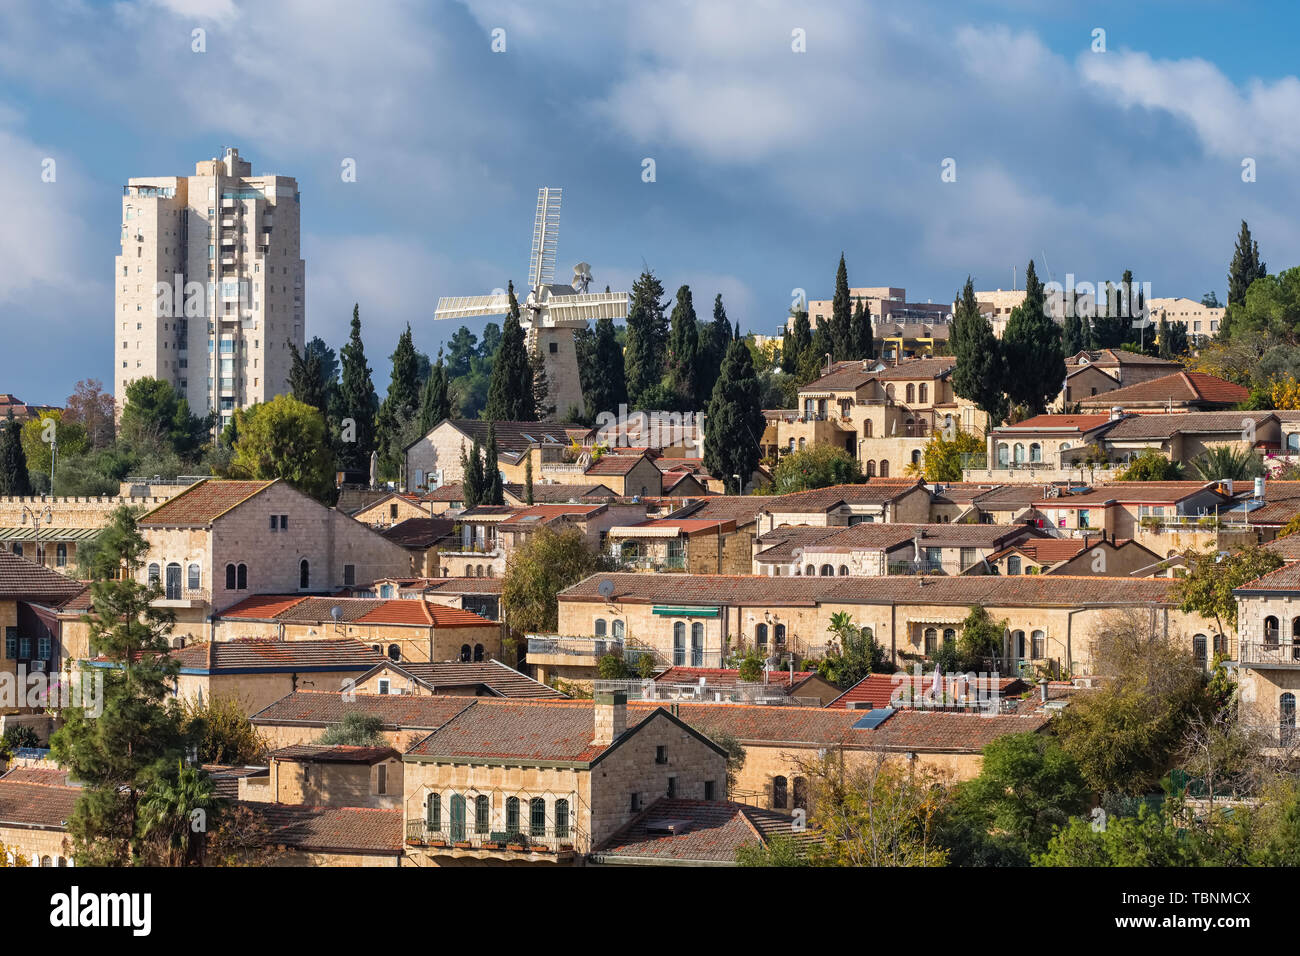 View of Yemin Moshe neighborhood in Jerusalem Stock Photo